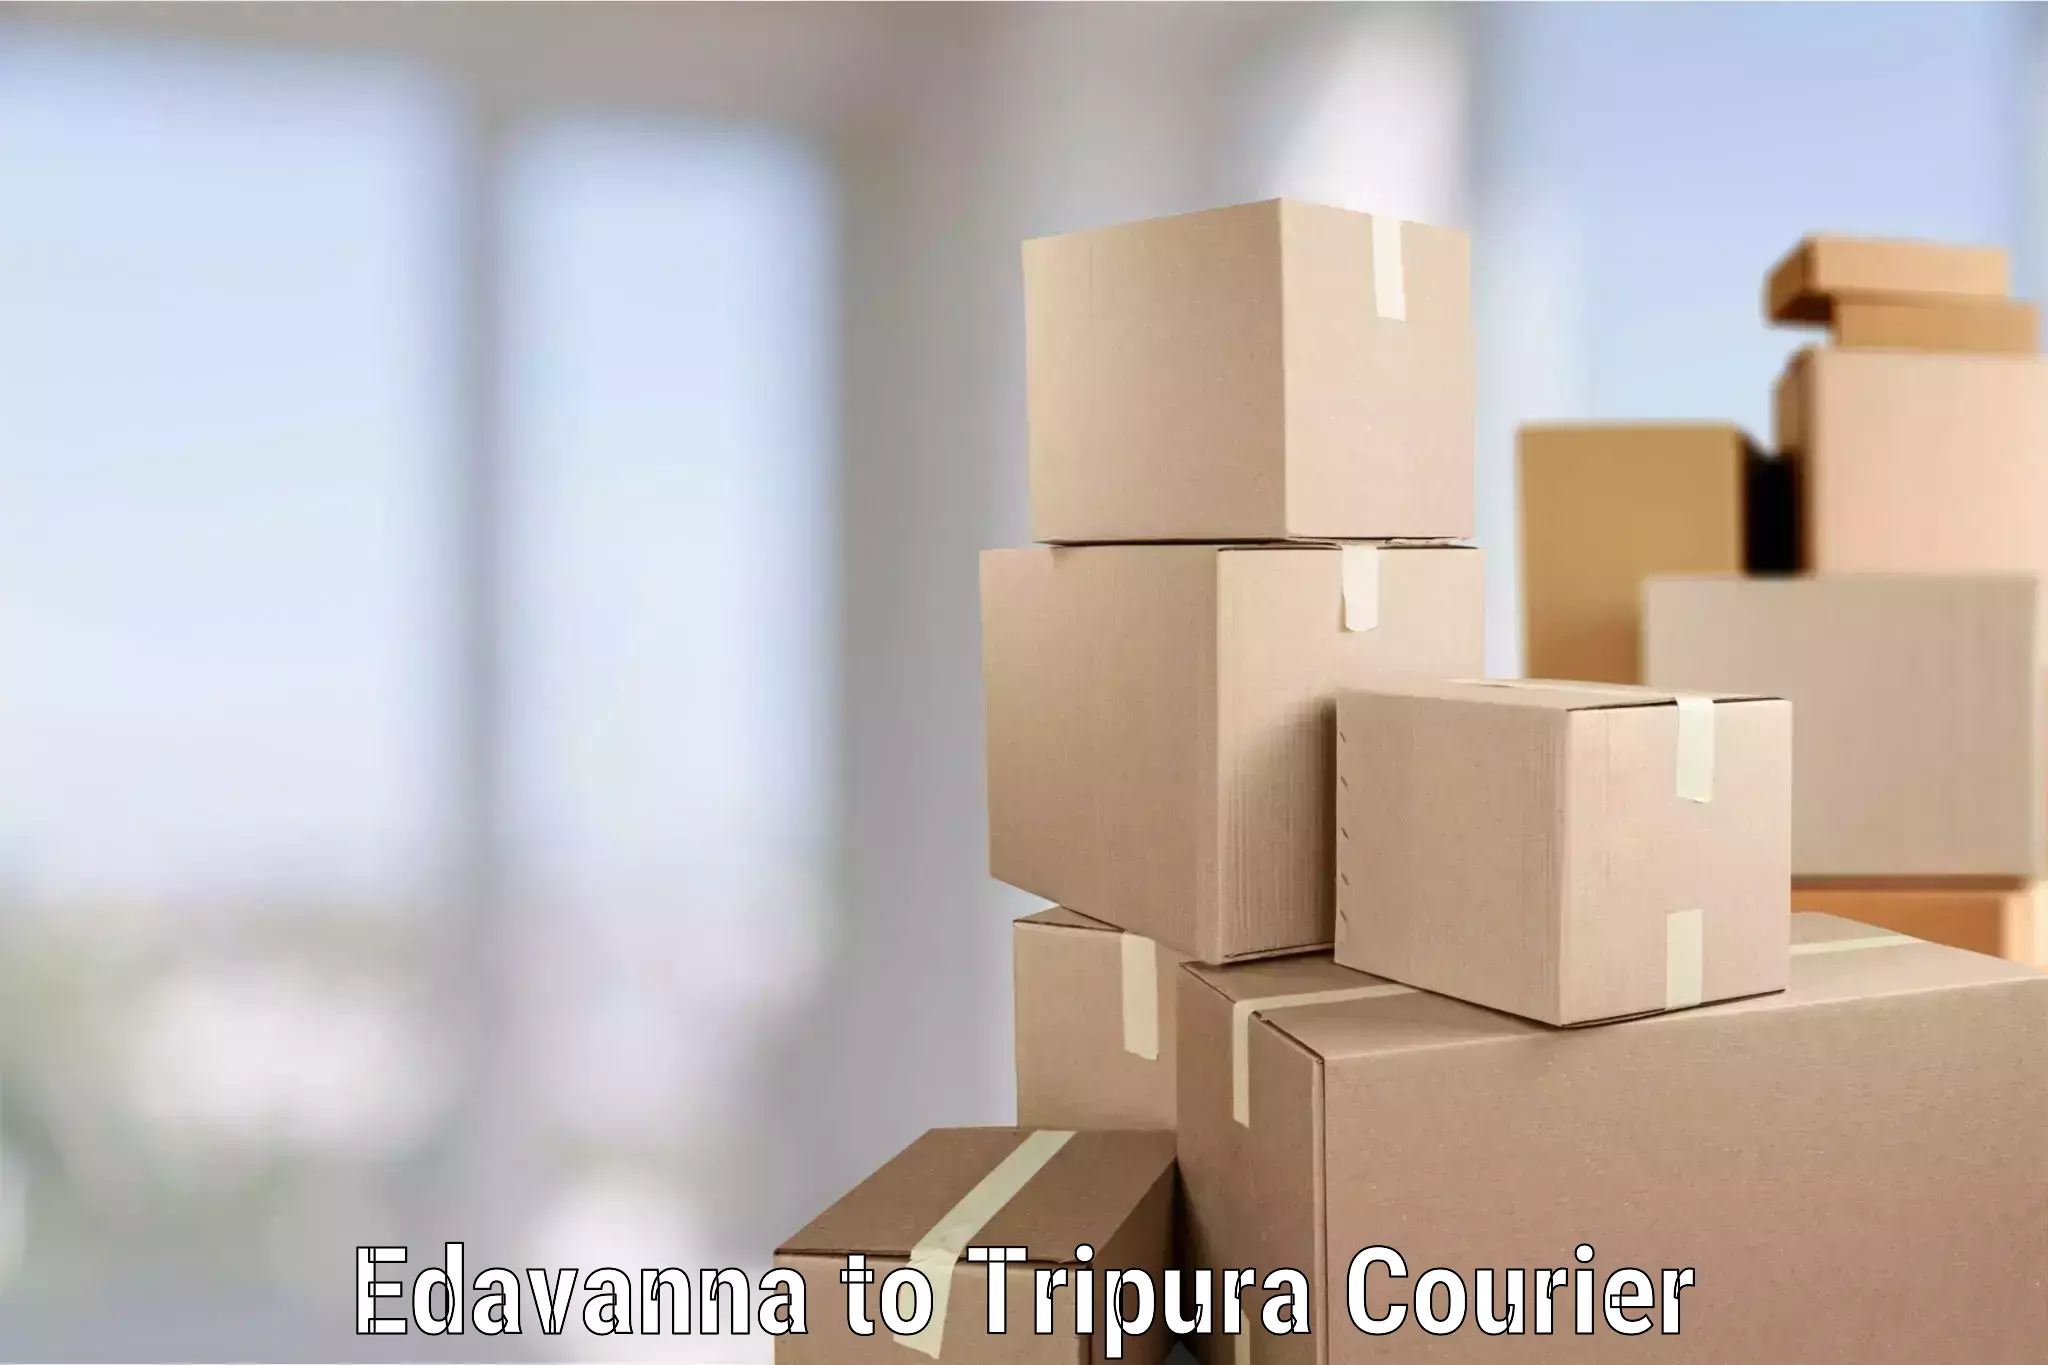 Skilled furniture movers Edavanna to Udaipur Tripura